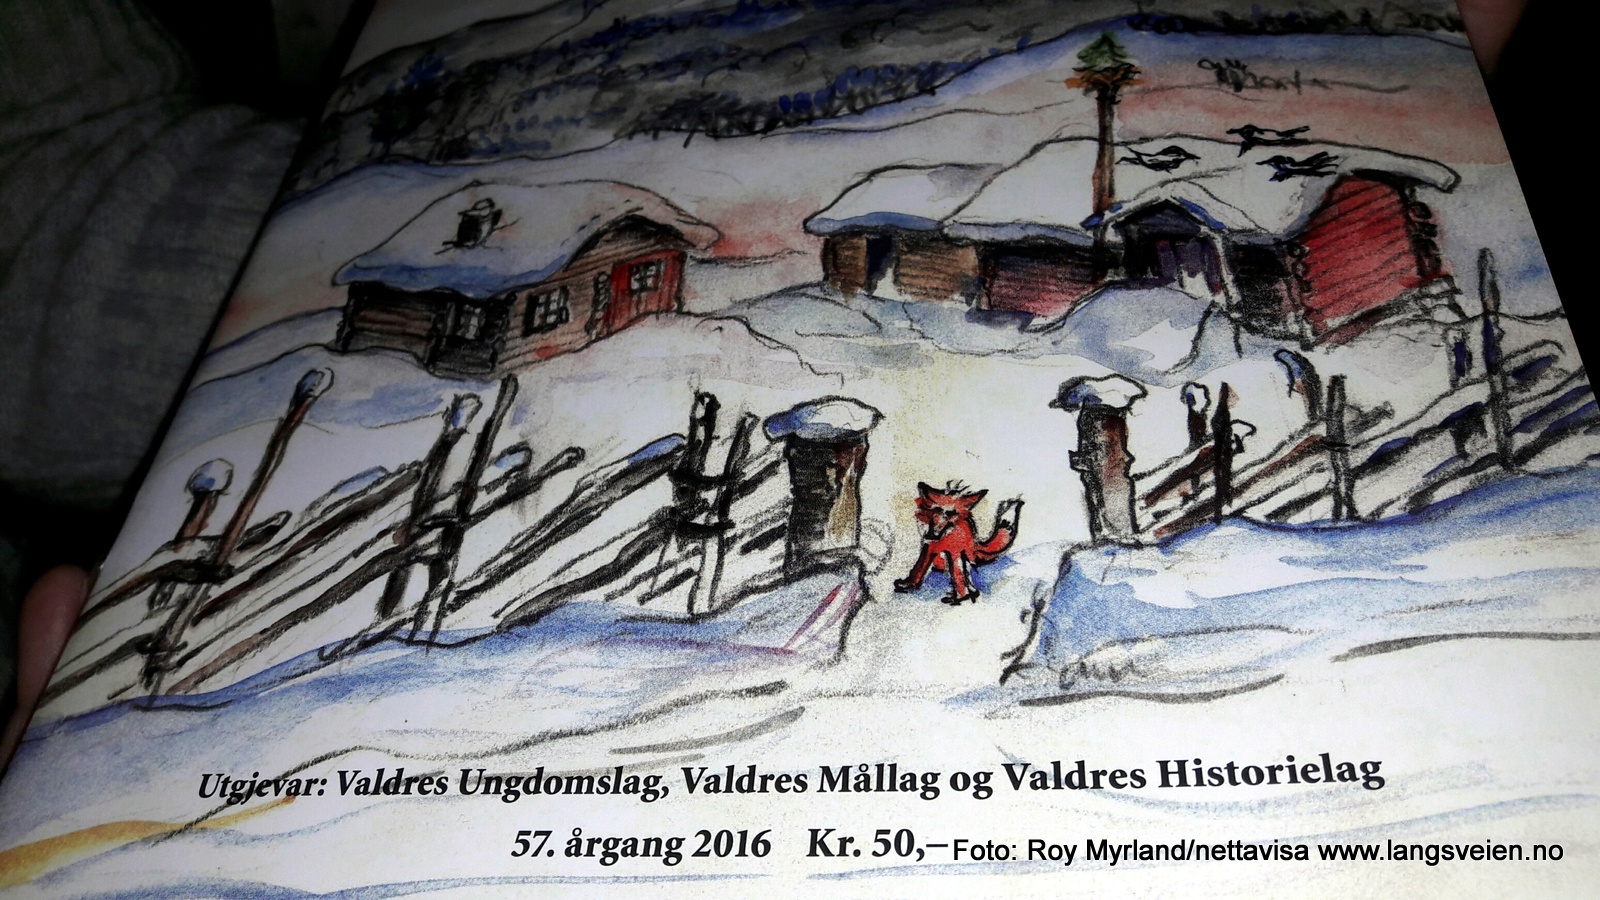 Jul i Valdres 2016 er gitt ut av Valdres Ungdomslag og Valdres Mållag